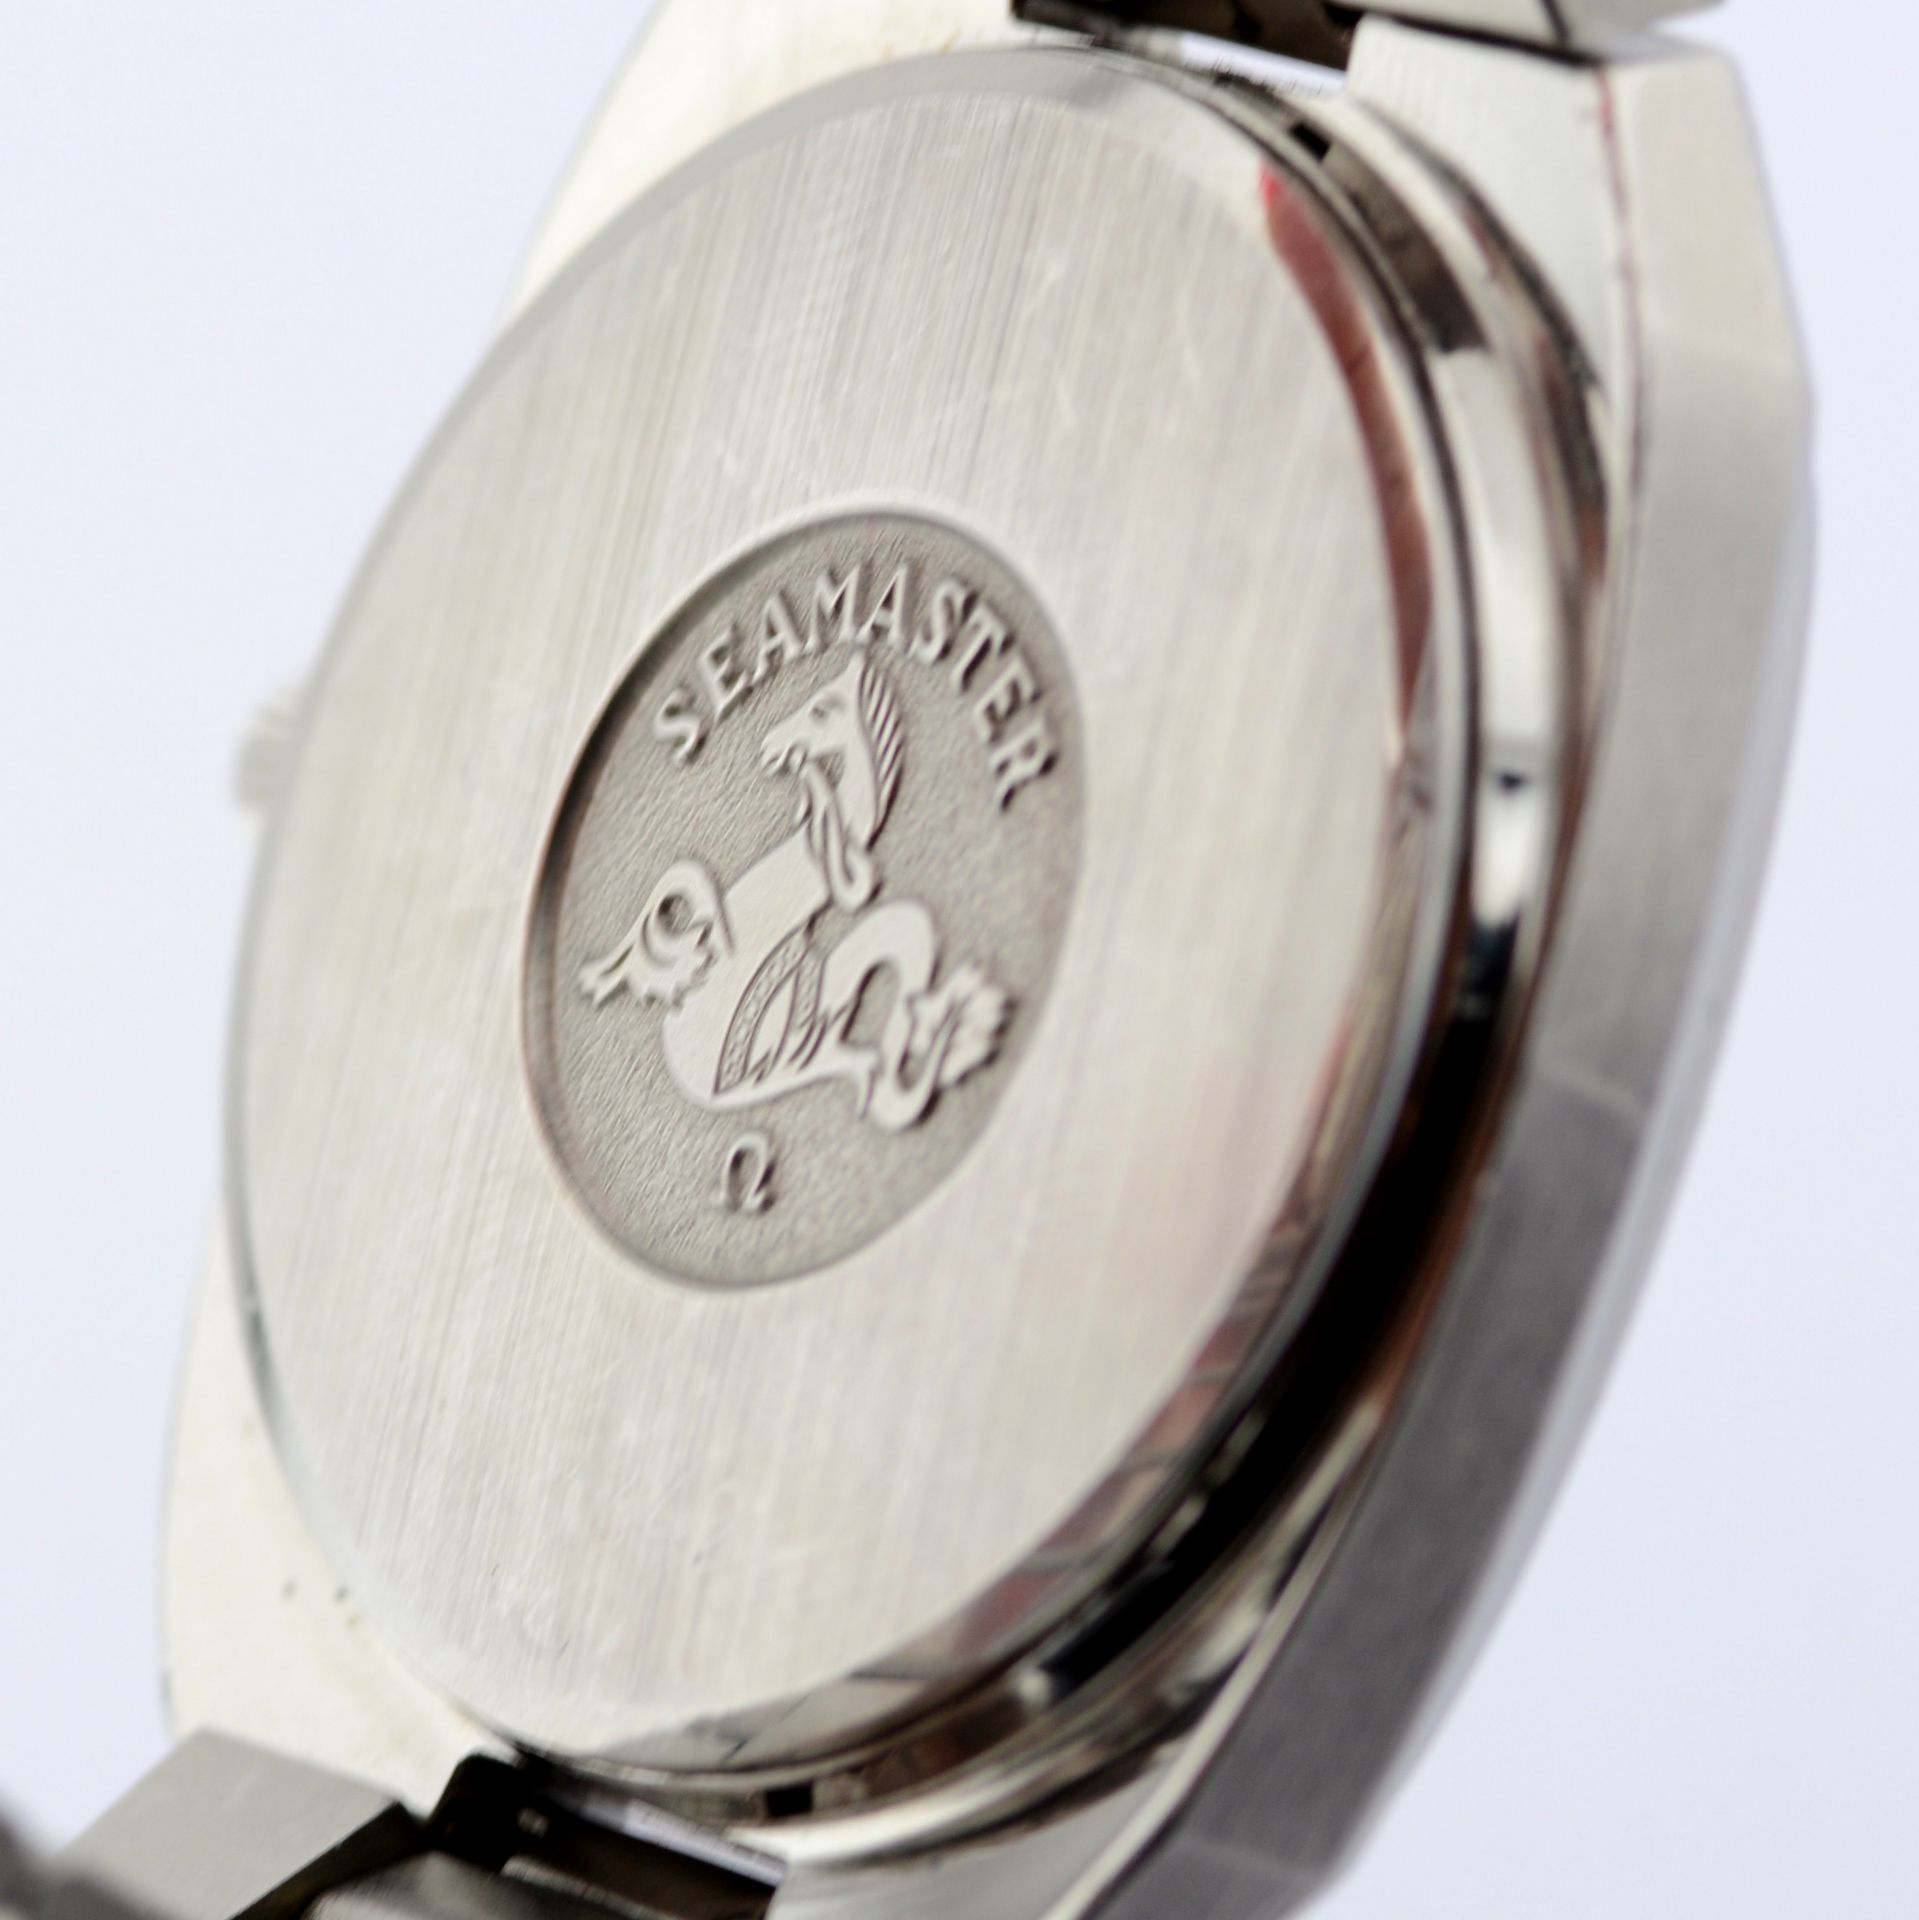 Omega / Seamaster Date 35 mm - Gentlmen's Steel Wrist Watch - Image 4 of 7